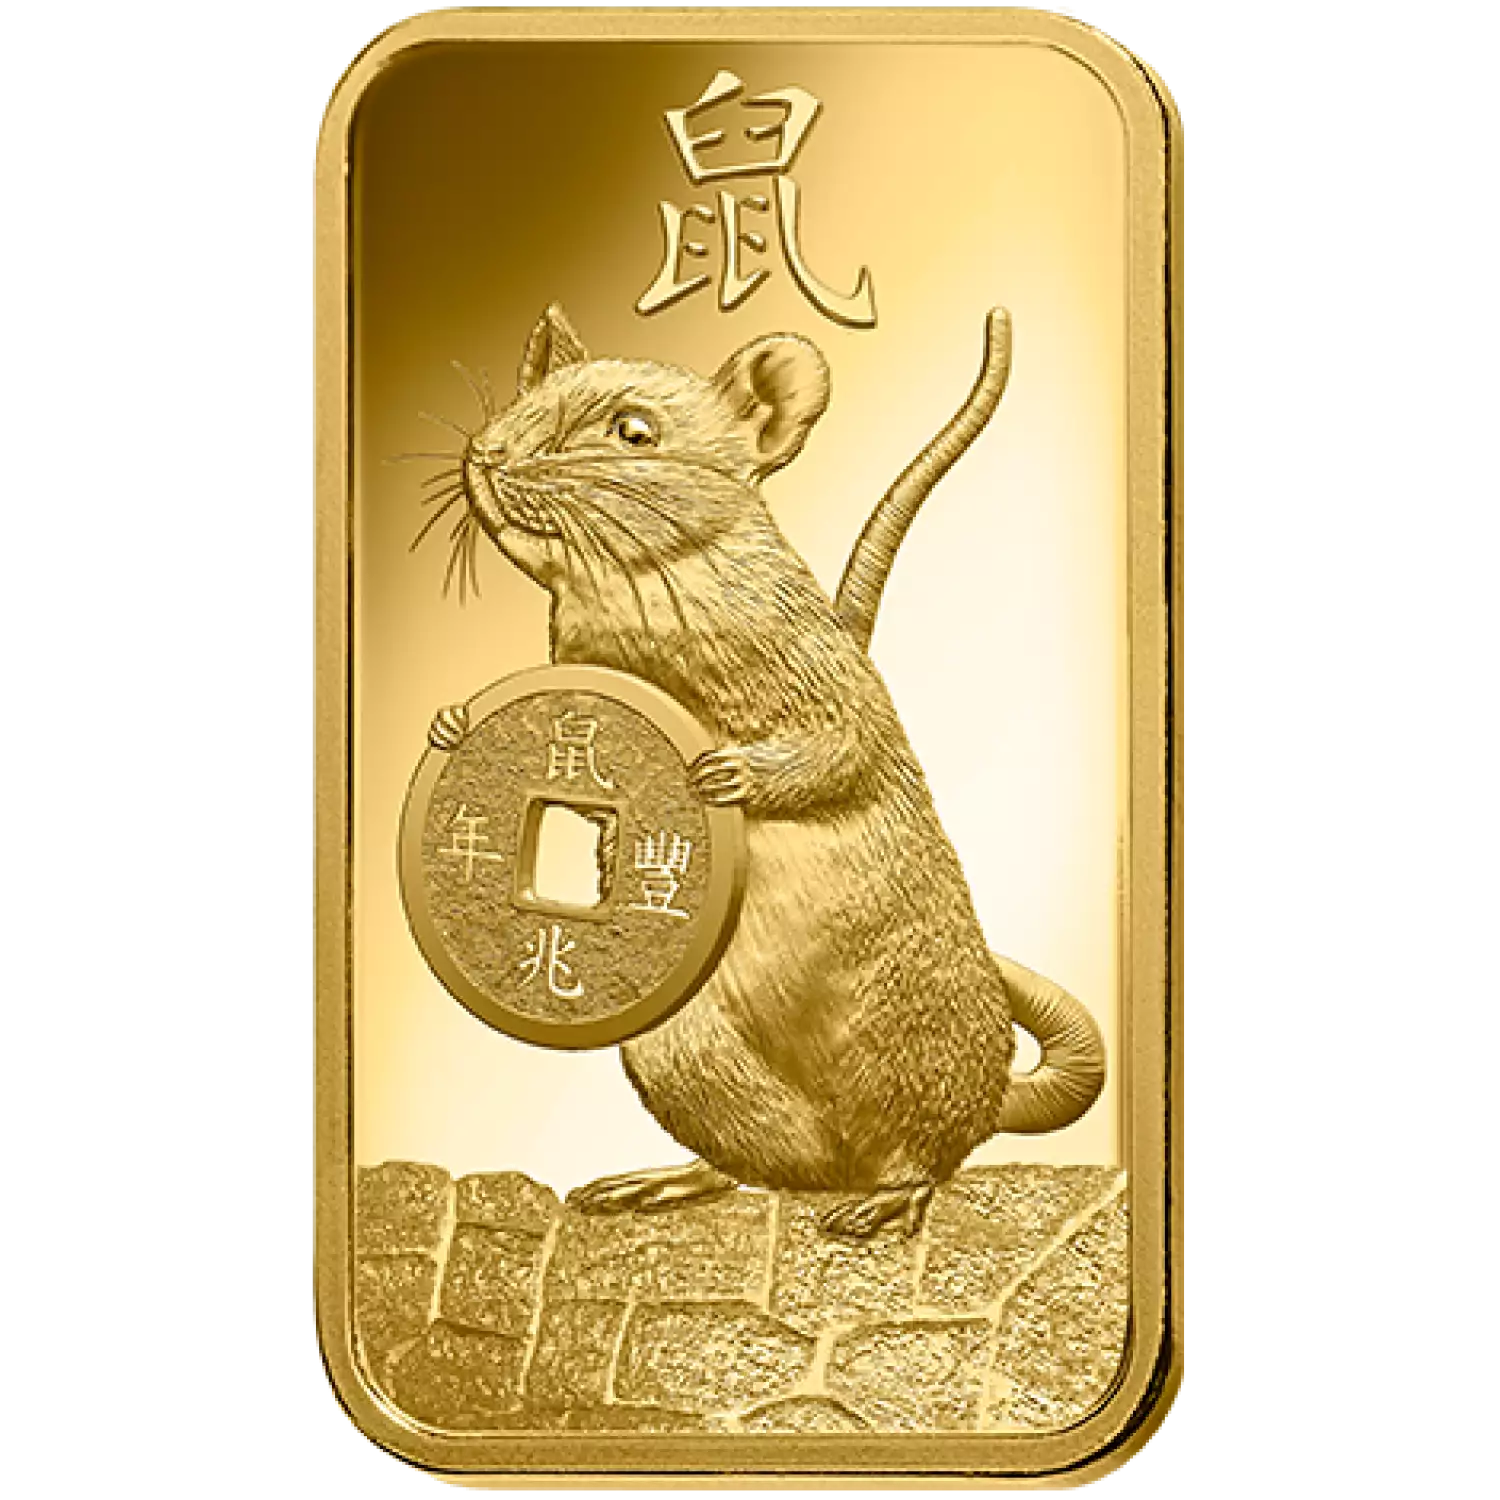 100g PAMP Gold Bar - Lunar Rat (2)